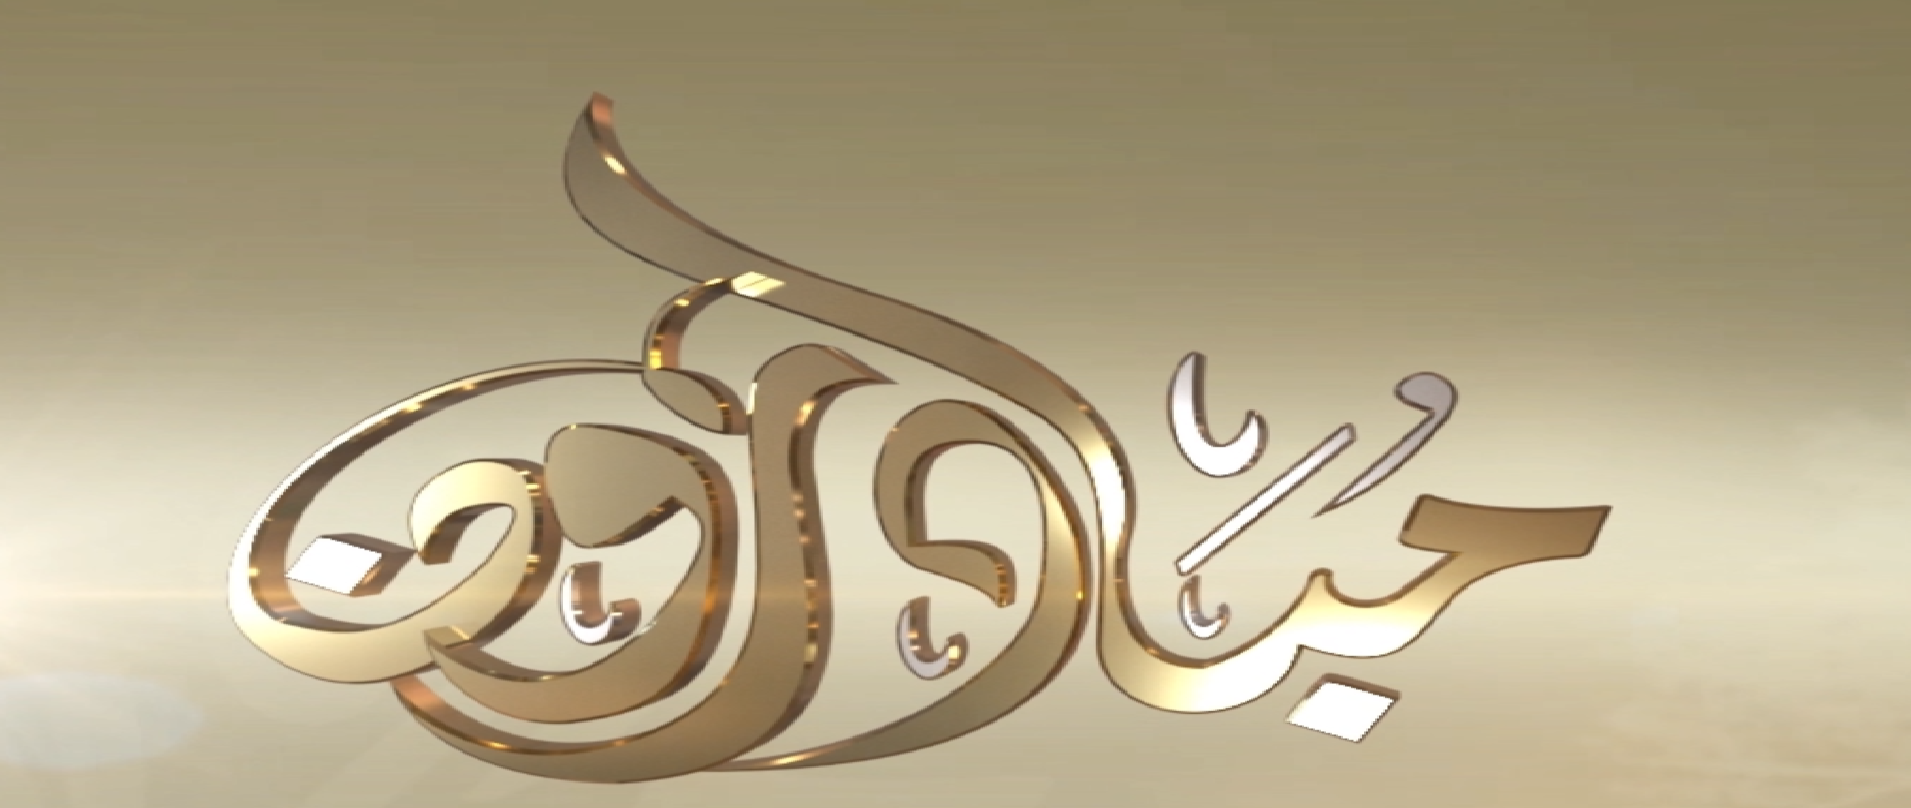 شاهد : برنامج مبادرون من قناه سبأ بتاريخ 9/ رمضان/1441